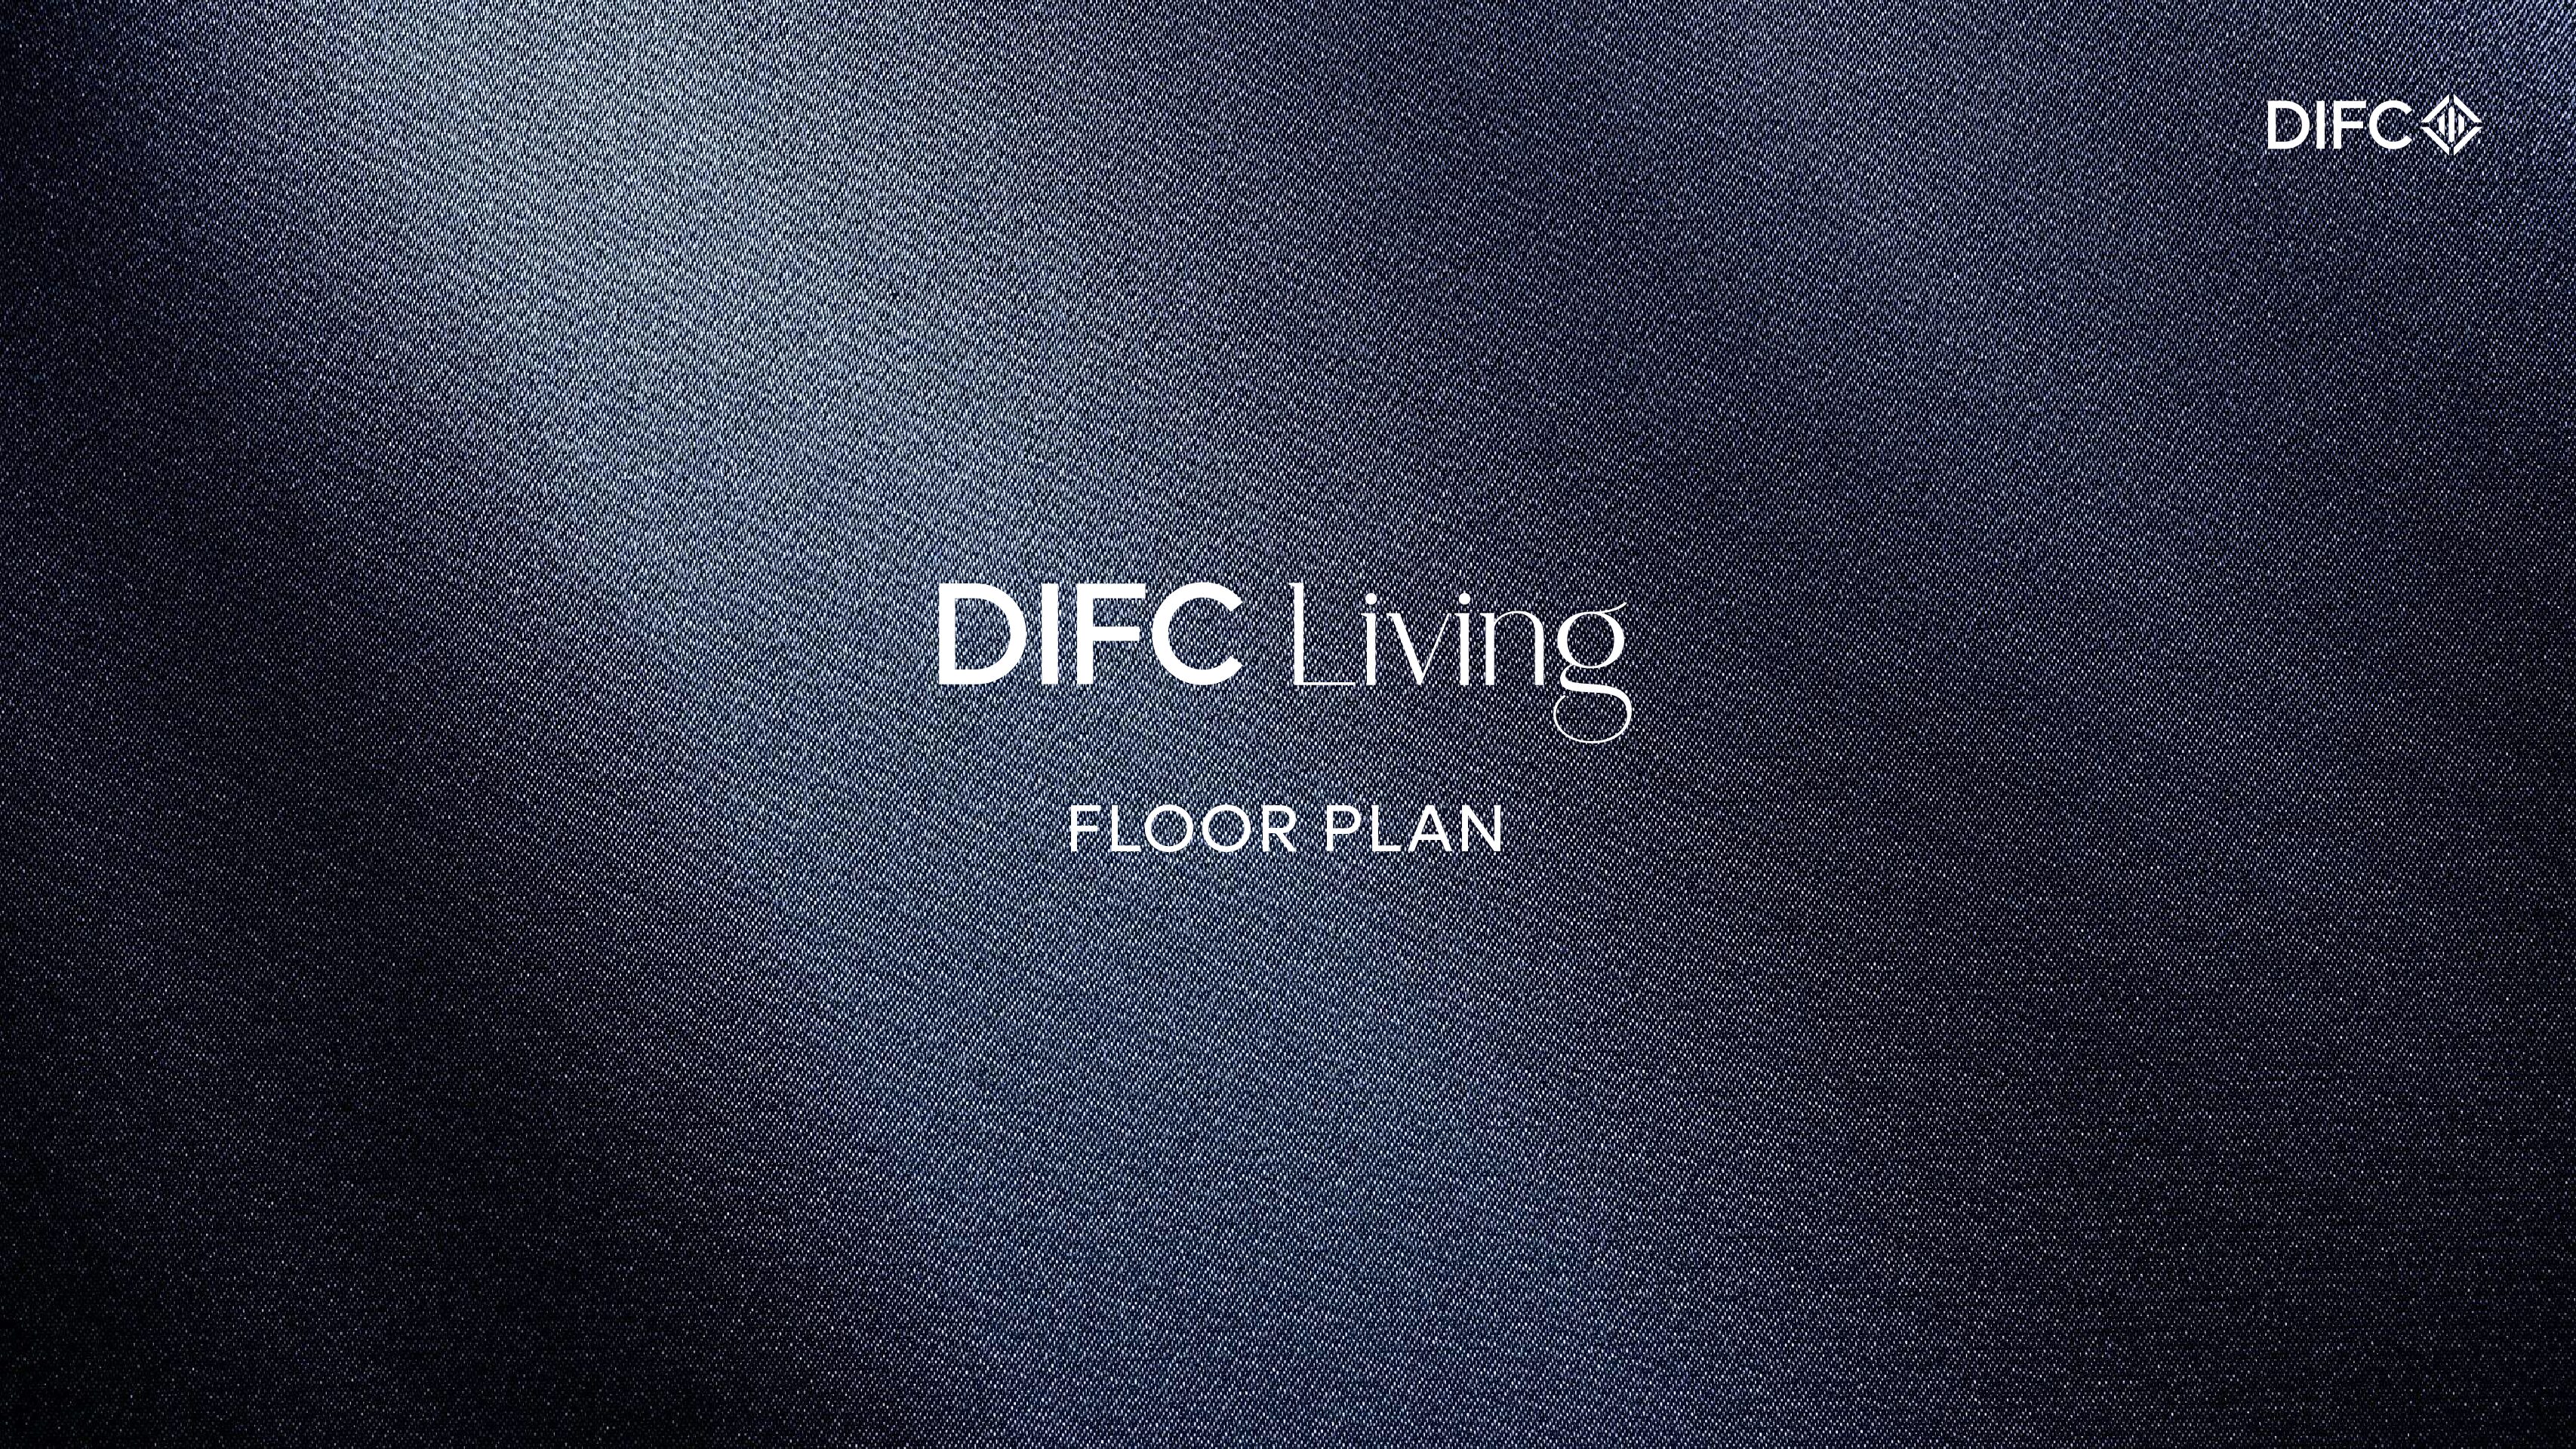 DIFC-floorplanen-en